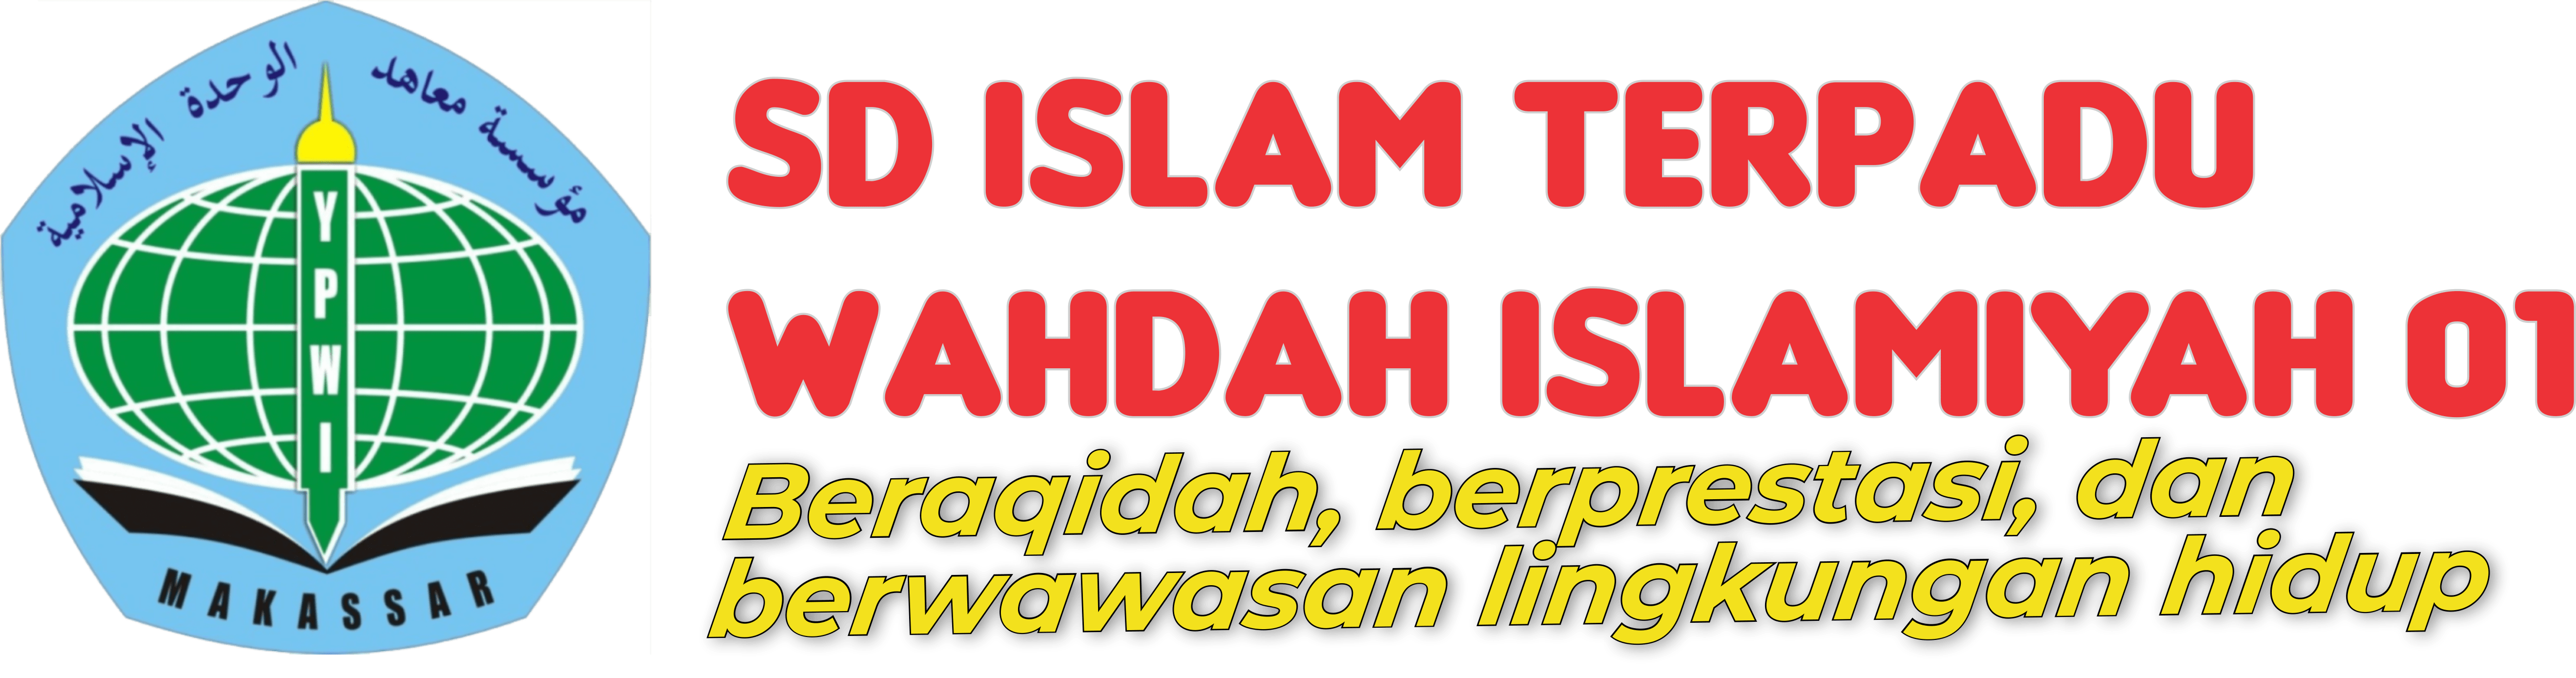 SD IT Wahdah Islamiyah 01